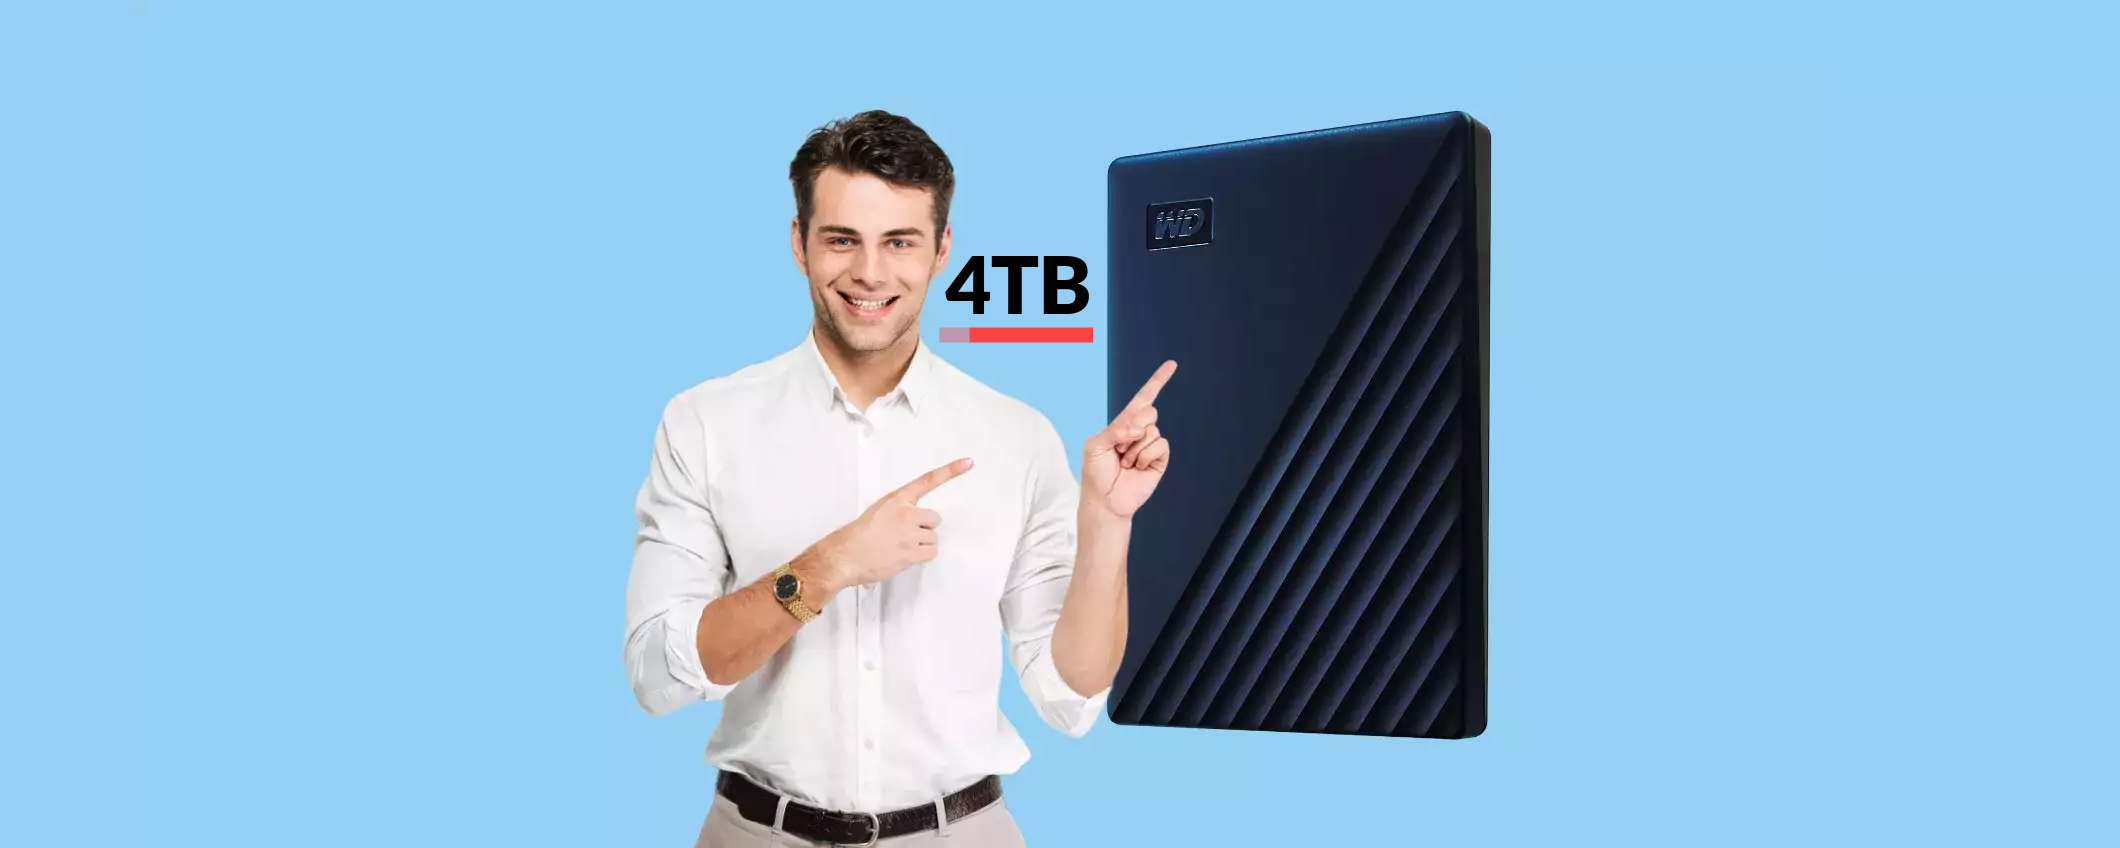 Hard disk esterno 4TB per MAC a poco più di 140€: minimo storico